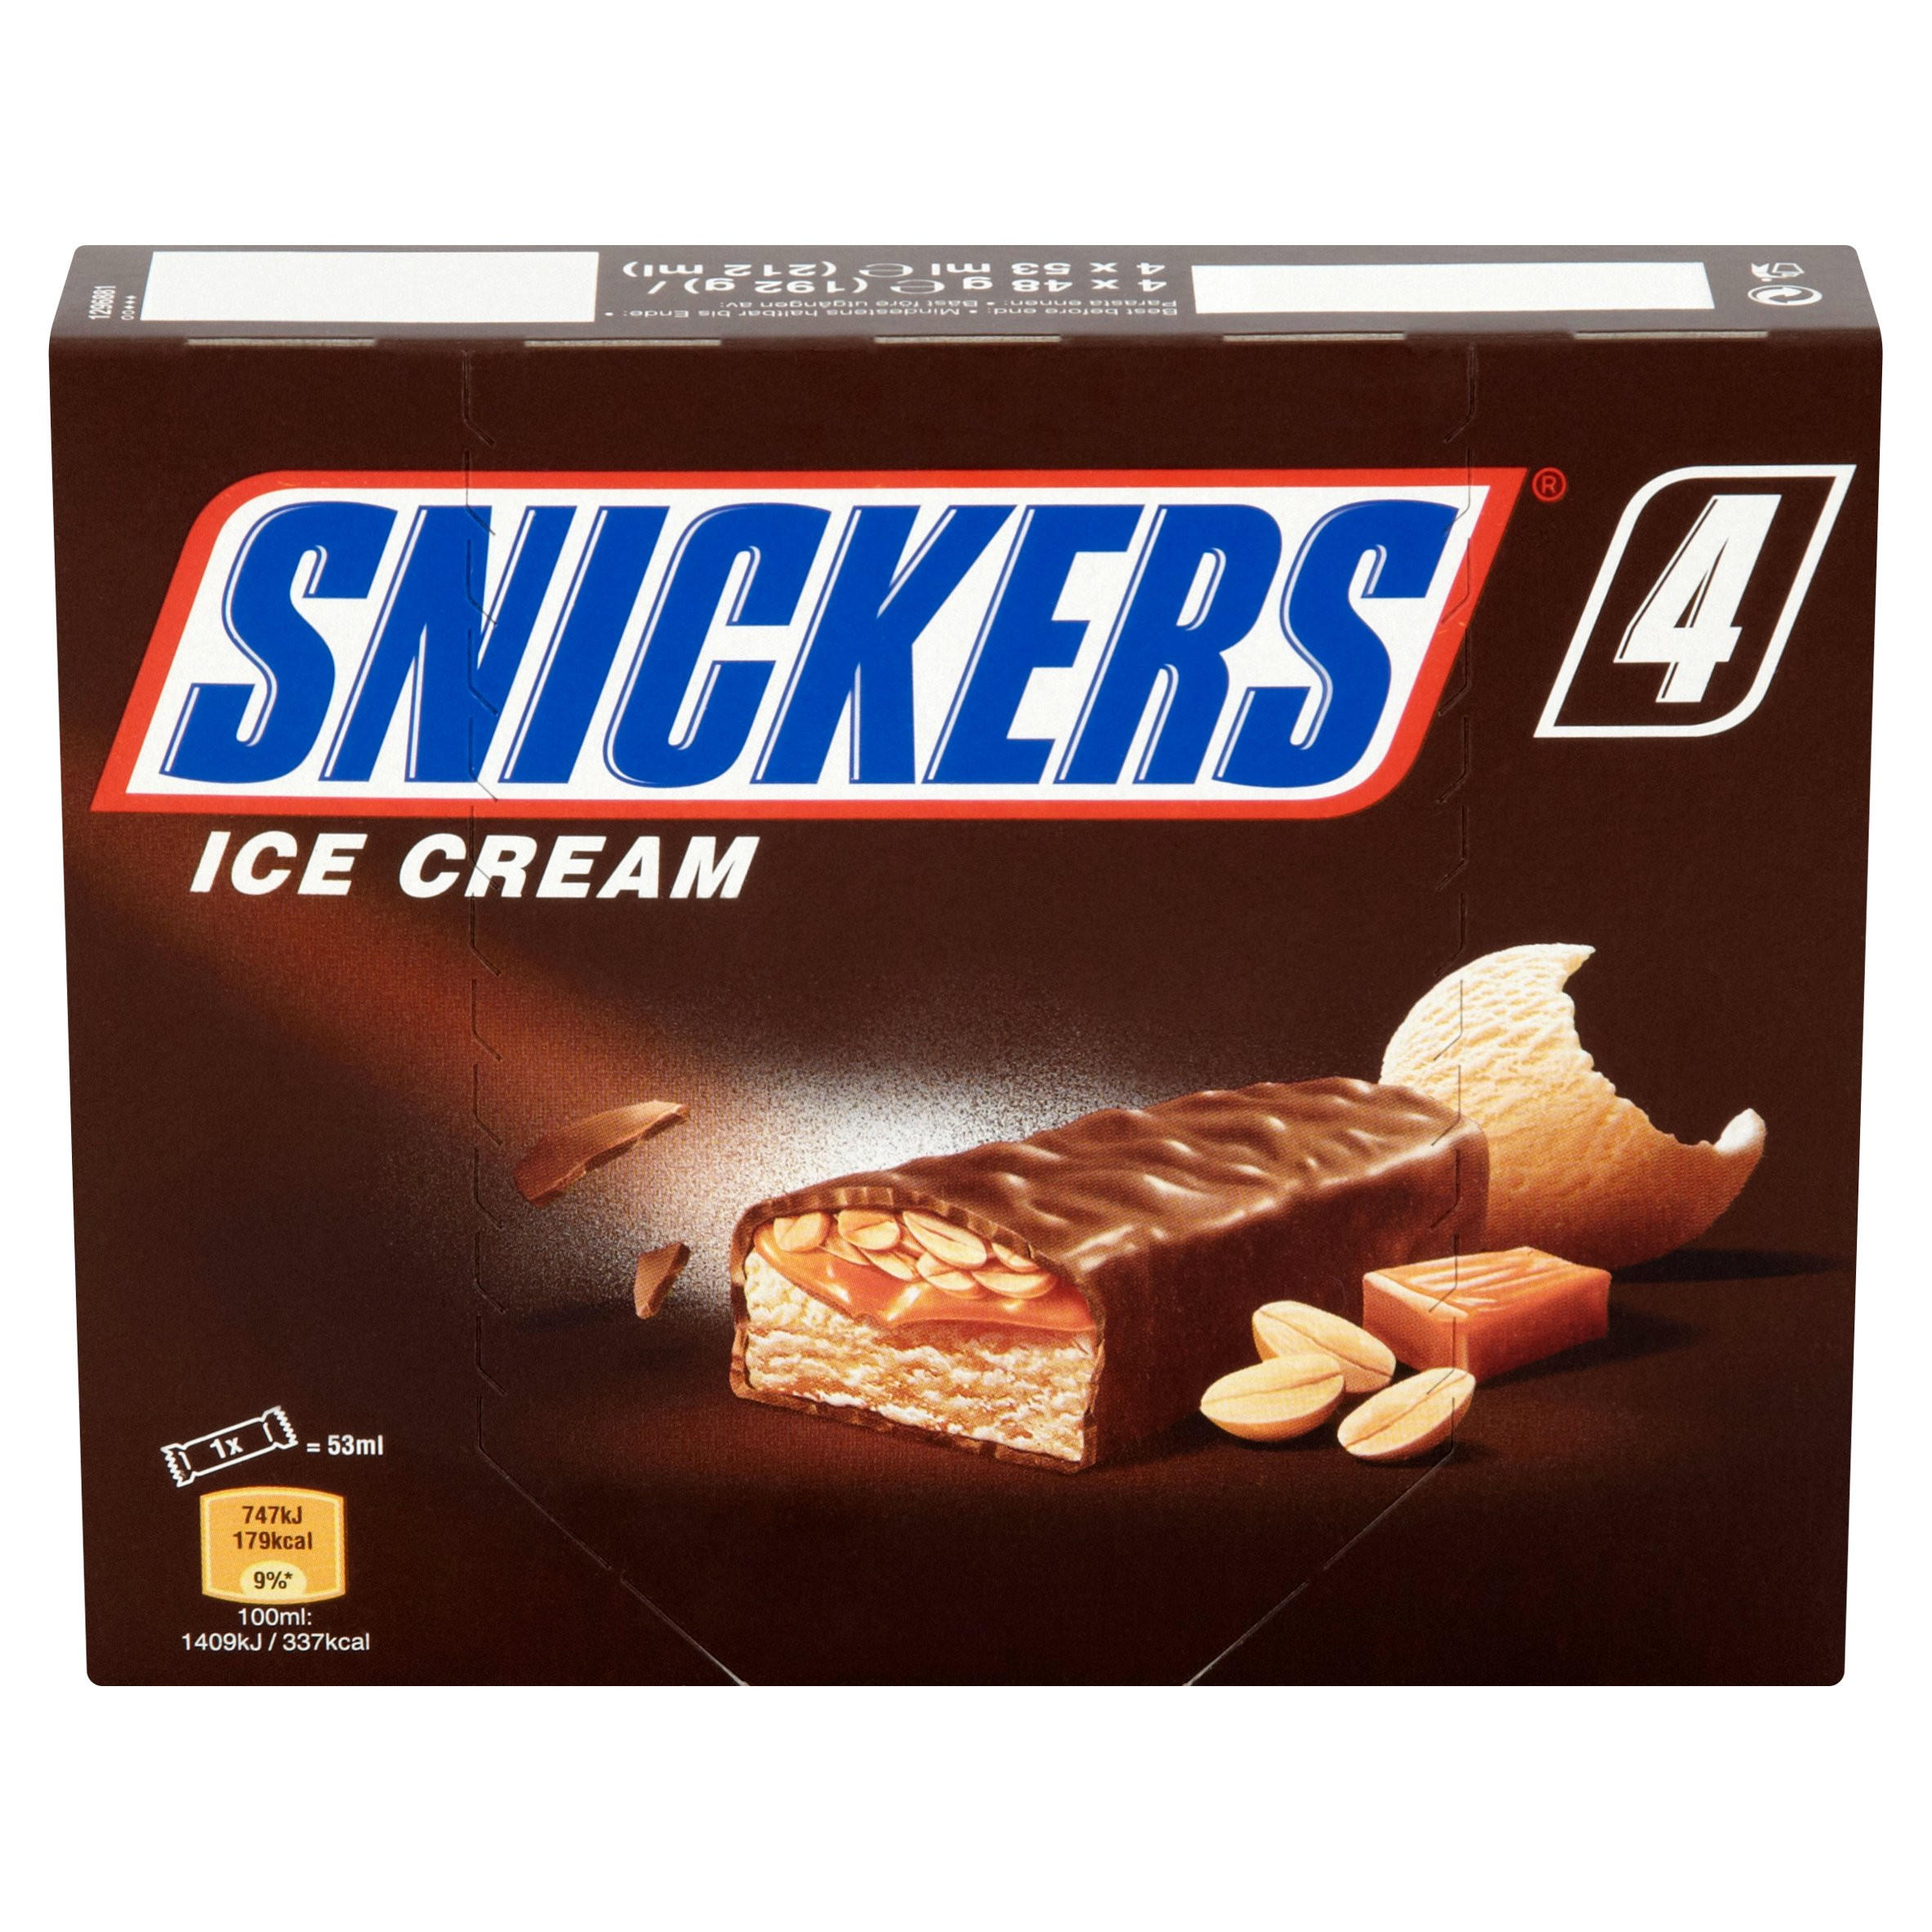 Мороженое snickers. Мороженое Сникерс. Snickers мороженое. Сникерс Ice Cream. Мороженое Сникерс реклама.